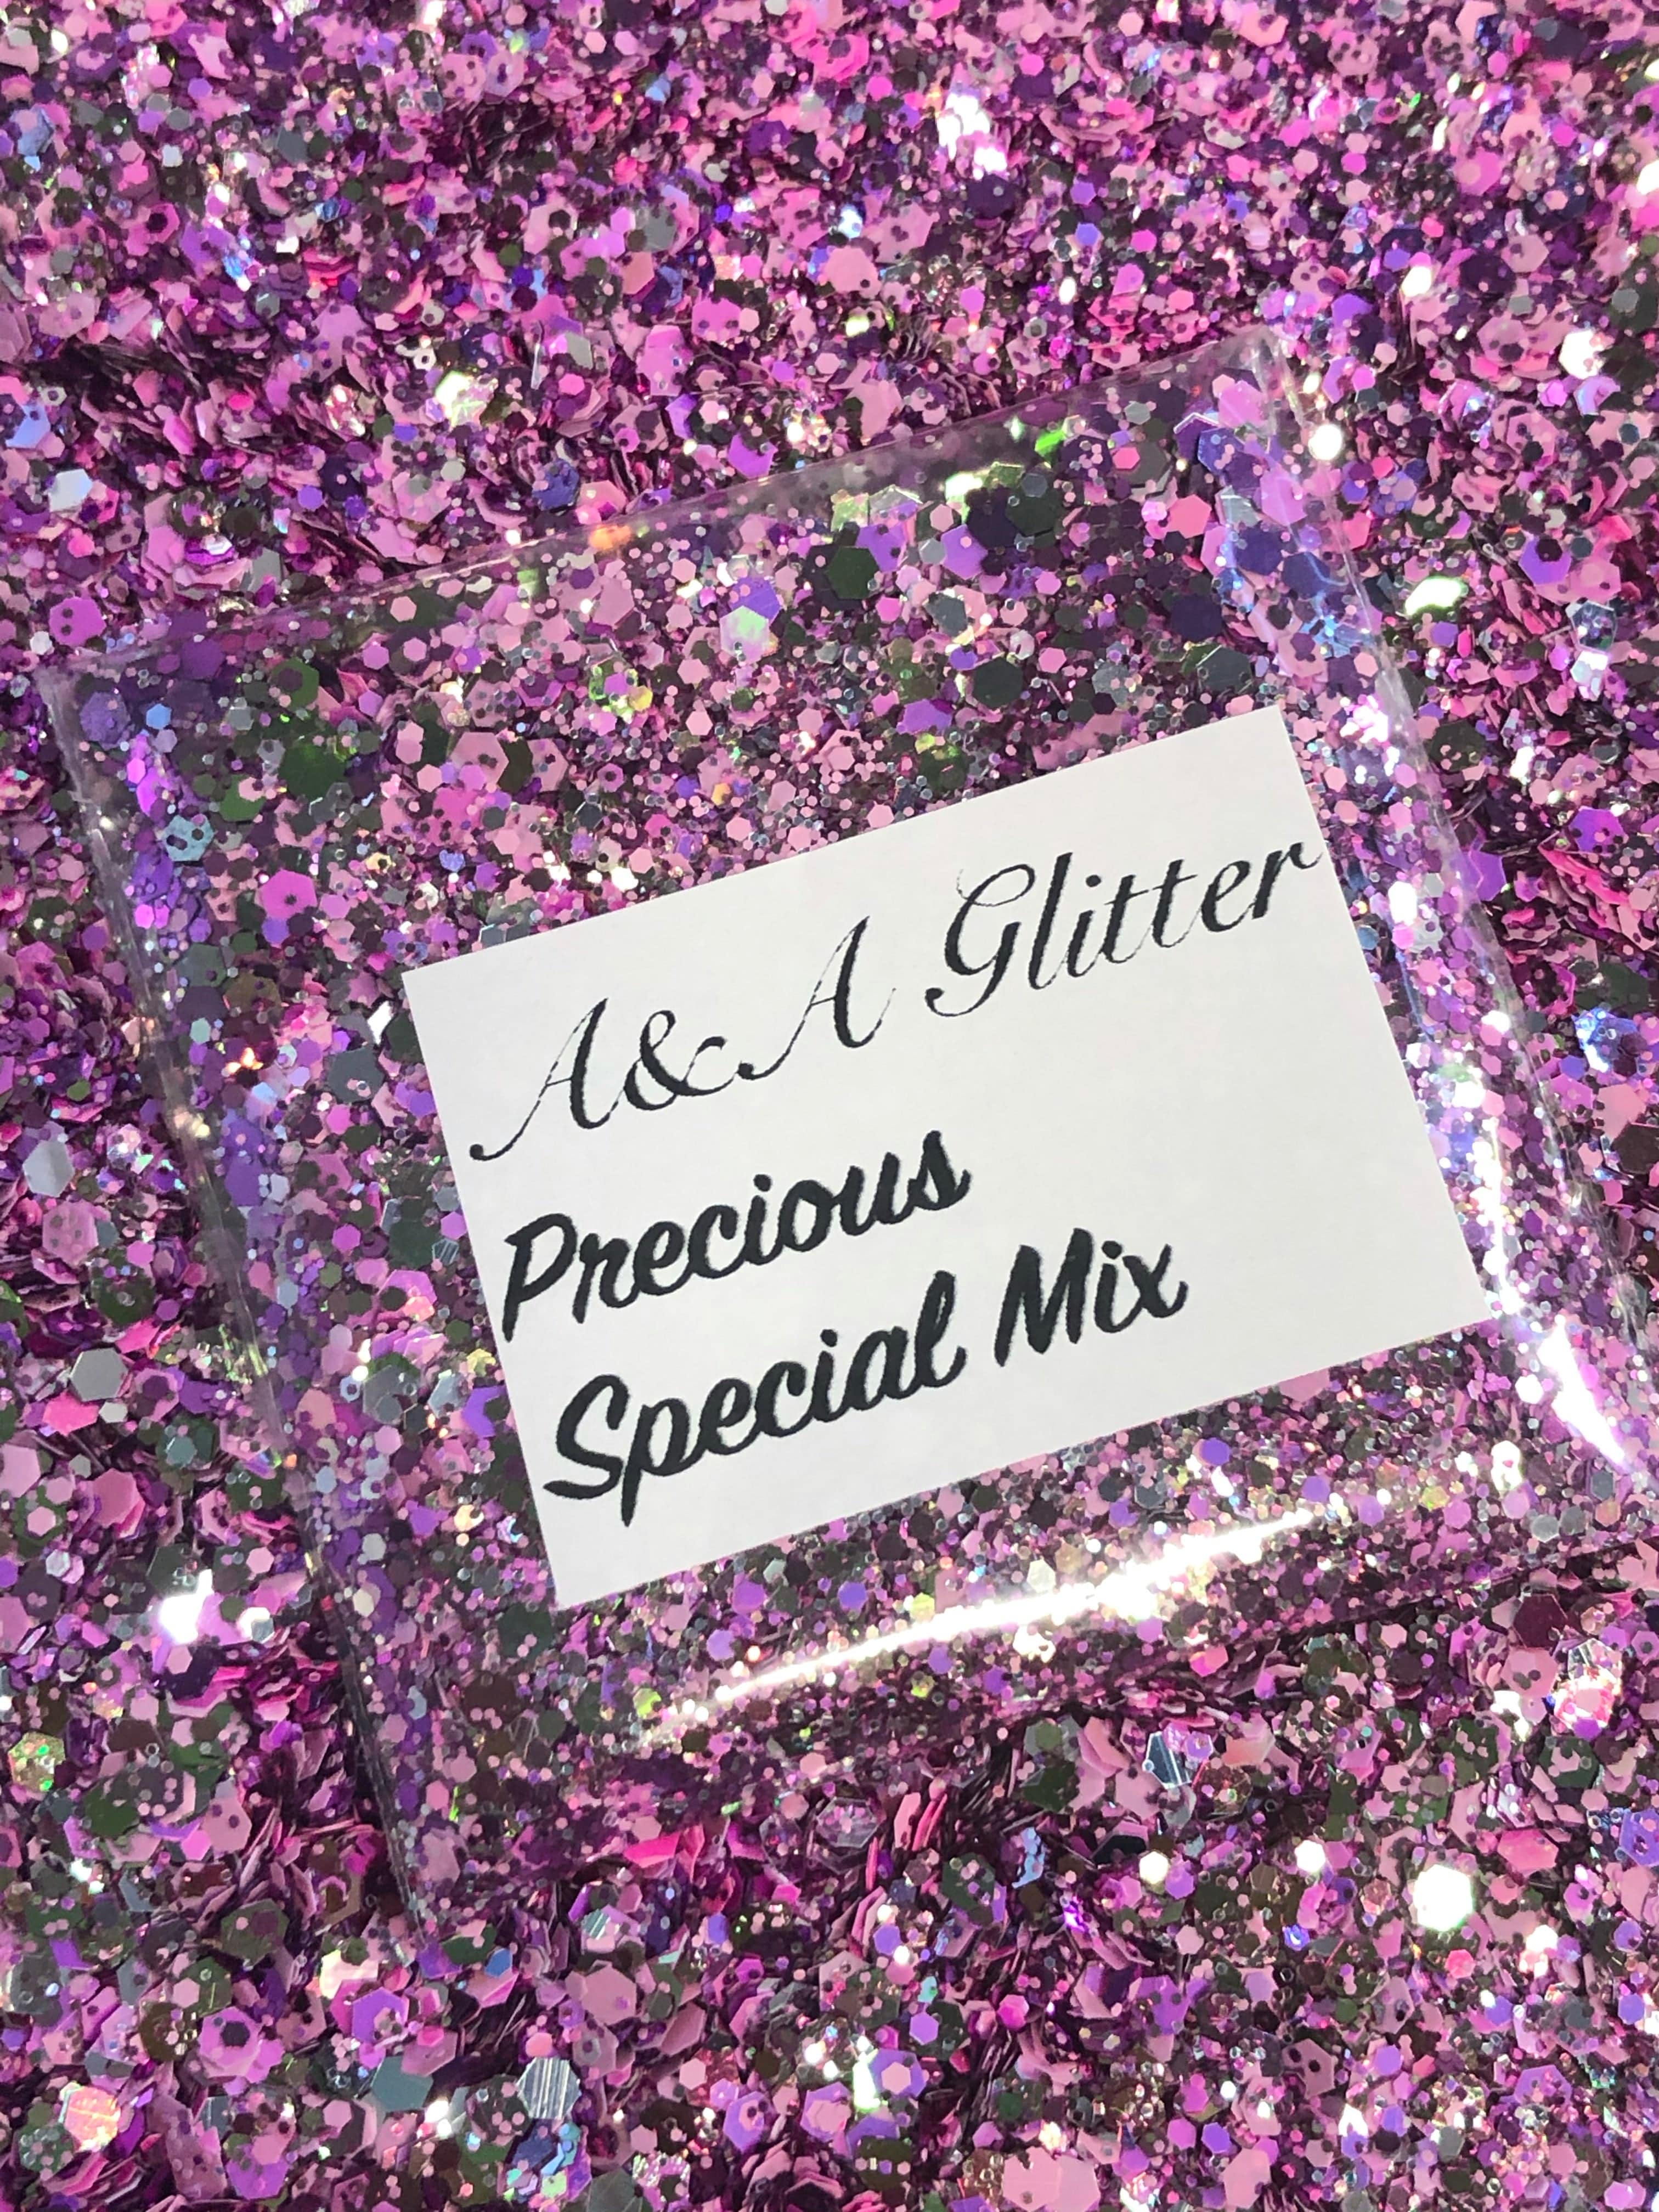 Precious - Special Mix